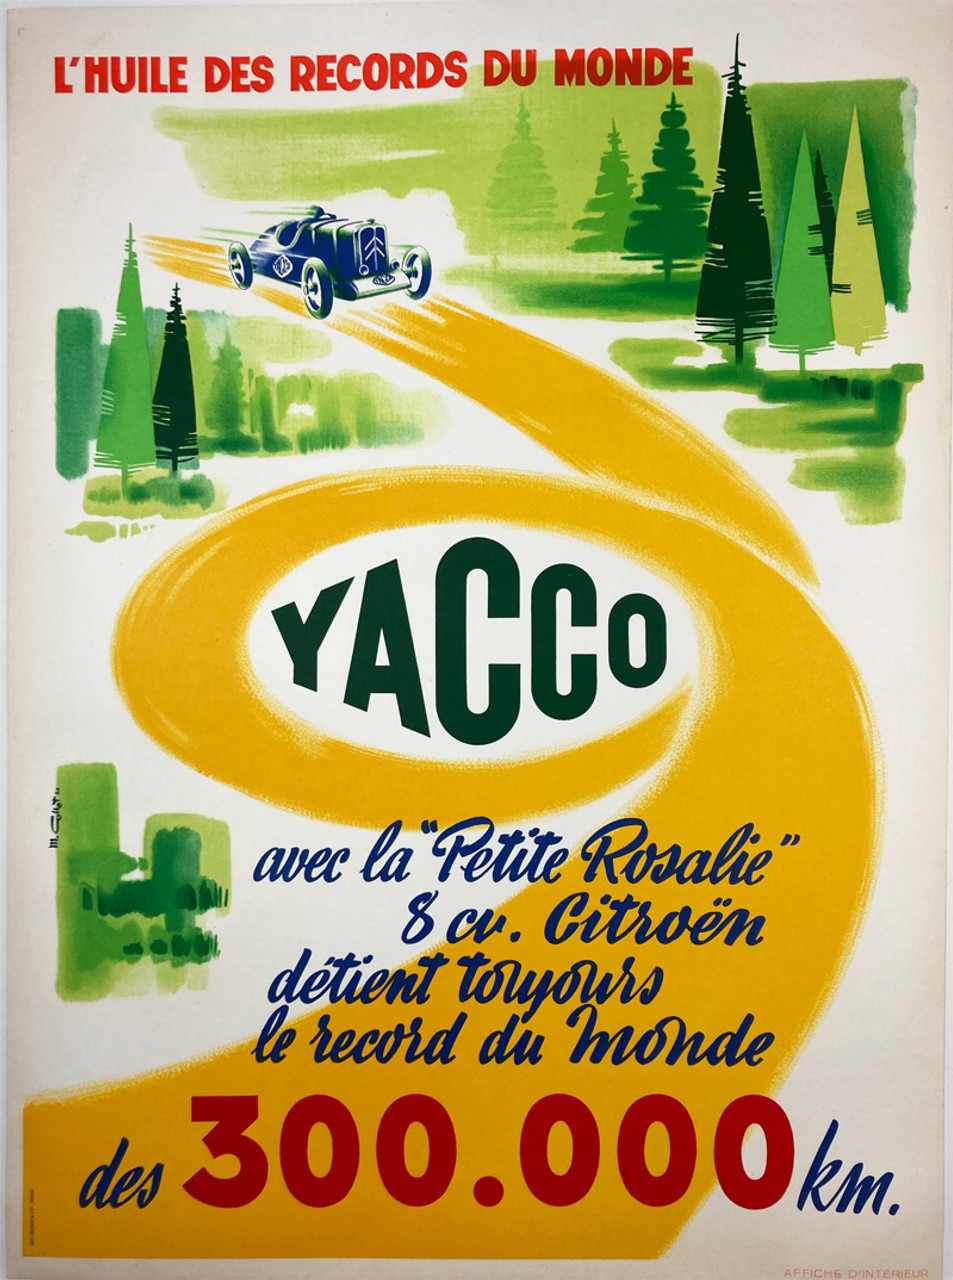 Yacco L'Huile des Records du Monde des 300,000 KM unknown ca. 1956 original lithograph on linen vintage poster